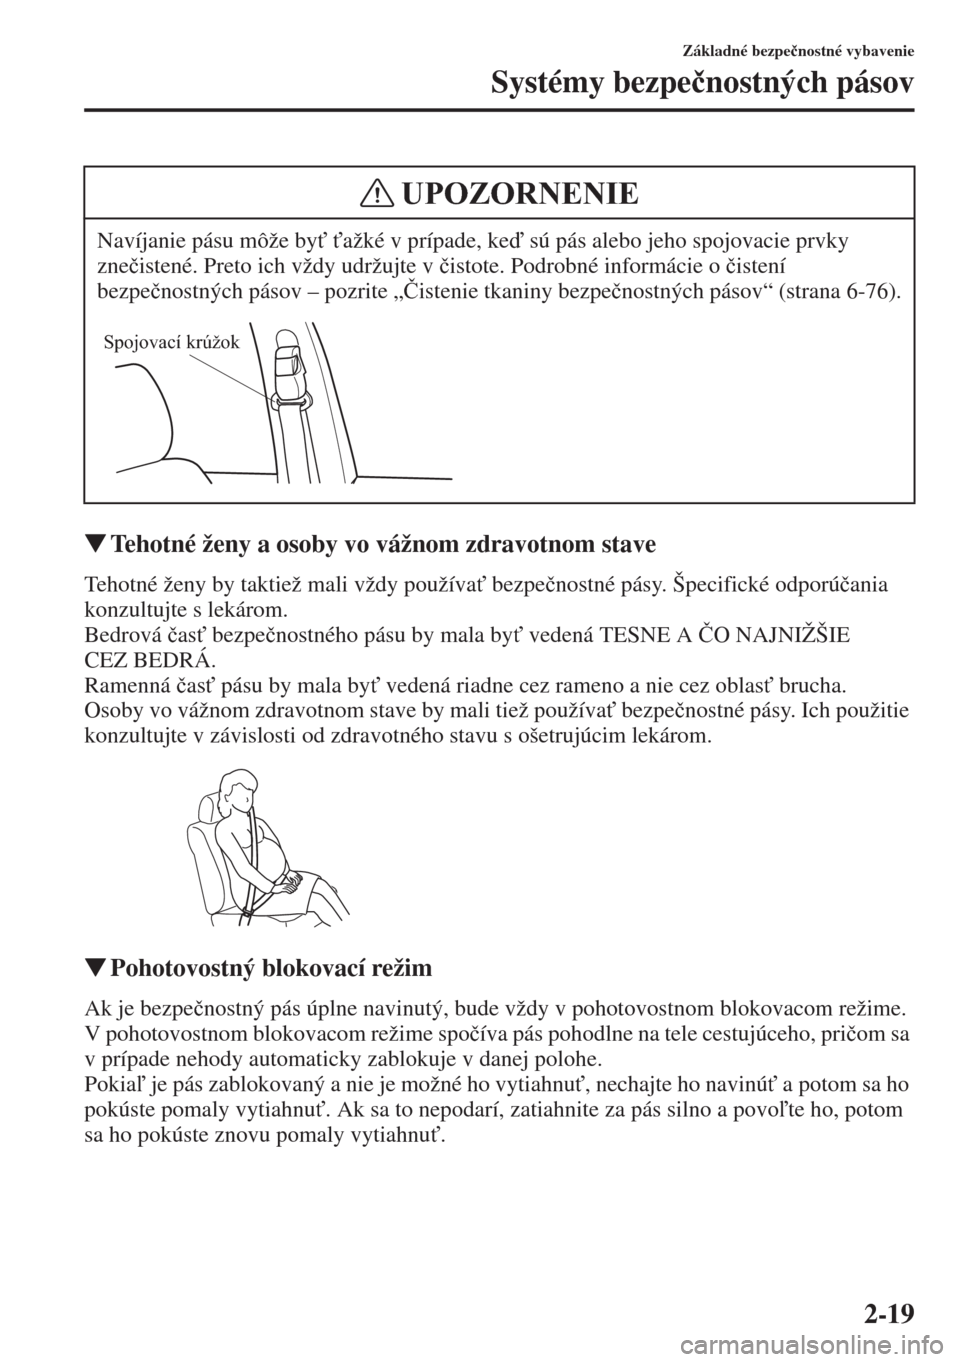 MAZDA MODEL CX-5 2015  Užívateľská príručka (in Slovak) 2-19
Základné bezpe�þnostné vybavenie
Systémy bezpe�þnostných pásov
�WTehotné ženy a osoby vo vážnom zdravotnom stave
Tehotné ženy by taktiež mali vždy používa" bezpe�þnostné pás